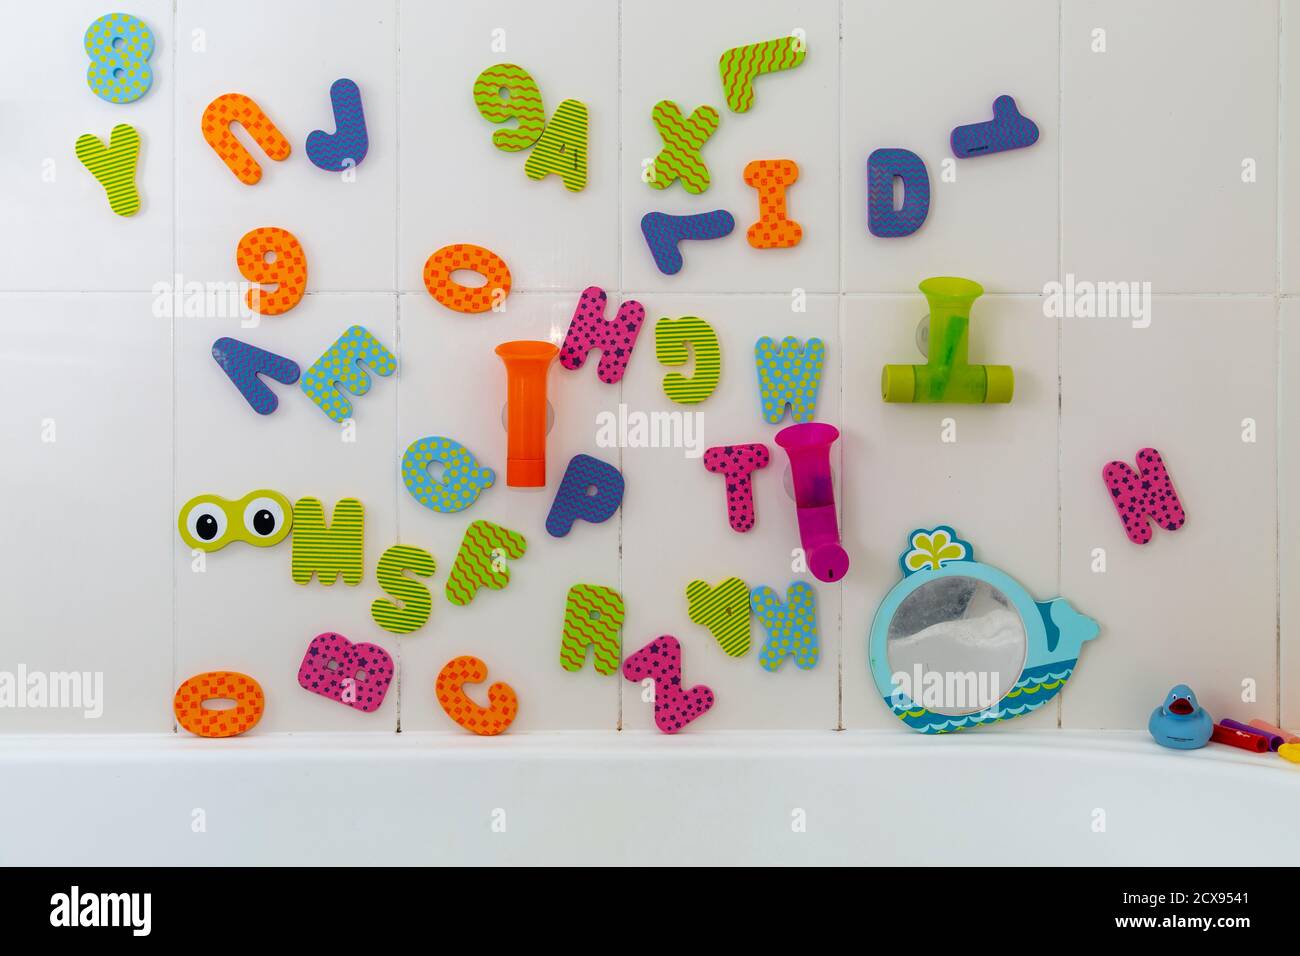 Juguetes de baño con alfabeto infantil en el baño. Foto de stock